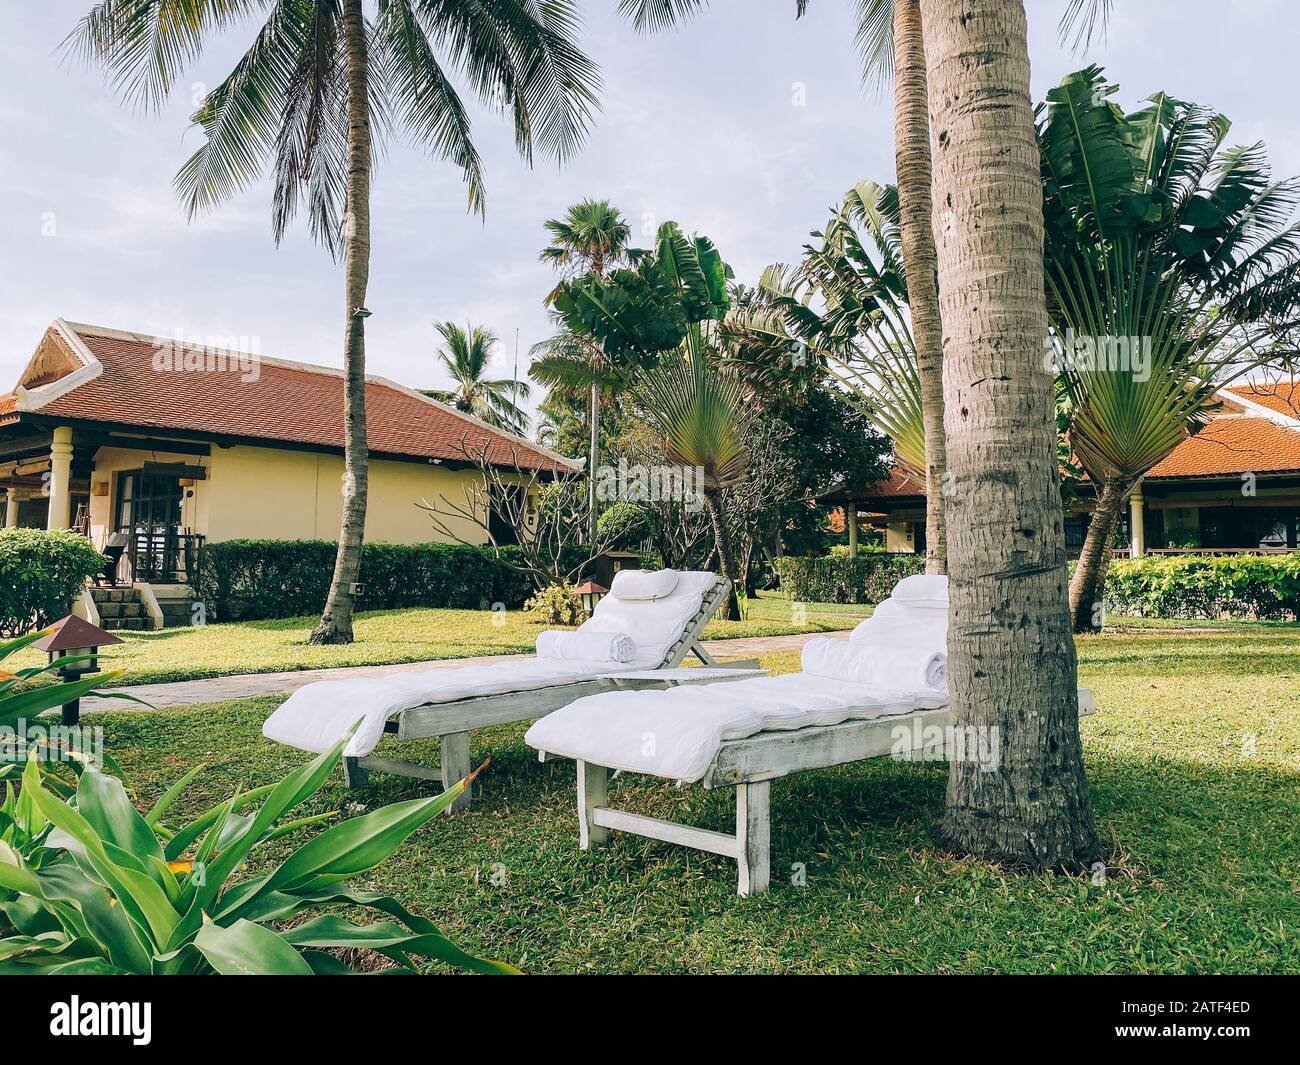 Bungalows in piedi tra vegetazione tropicale, circondato da palme. Un luogo dove rilassarsi e meditare. Rilassatevi in un paradiso tropicale Foto Stock